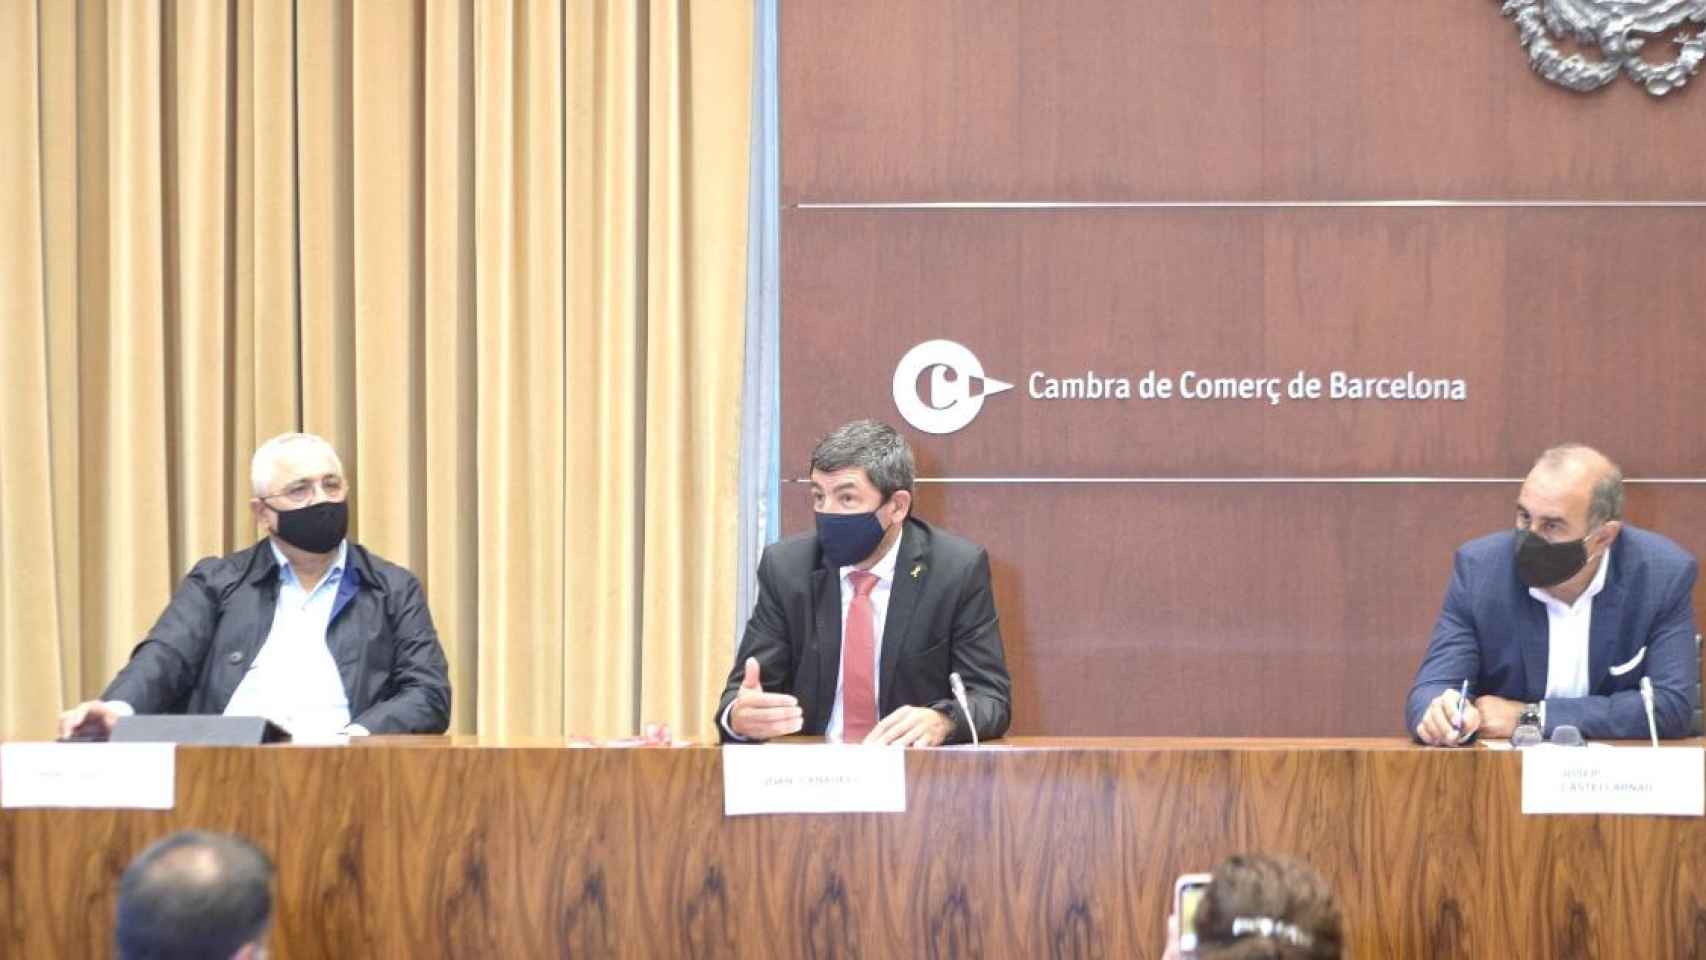 La restauración critica la gestión del Govern en un acto organizado por la Cambra de Comerç de Barcelona / TWITTER